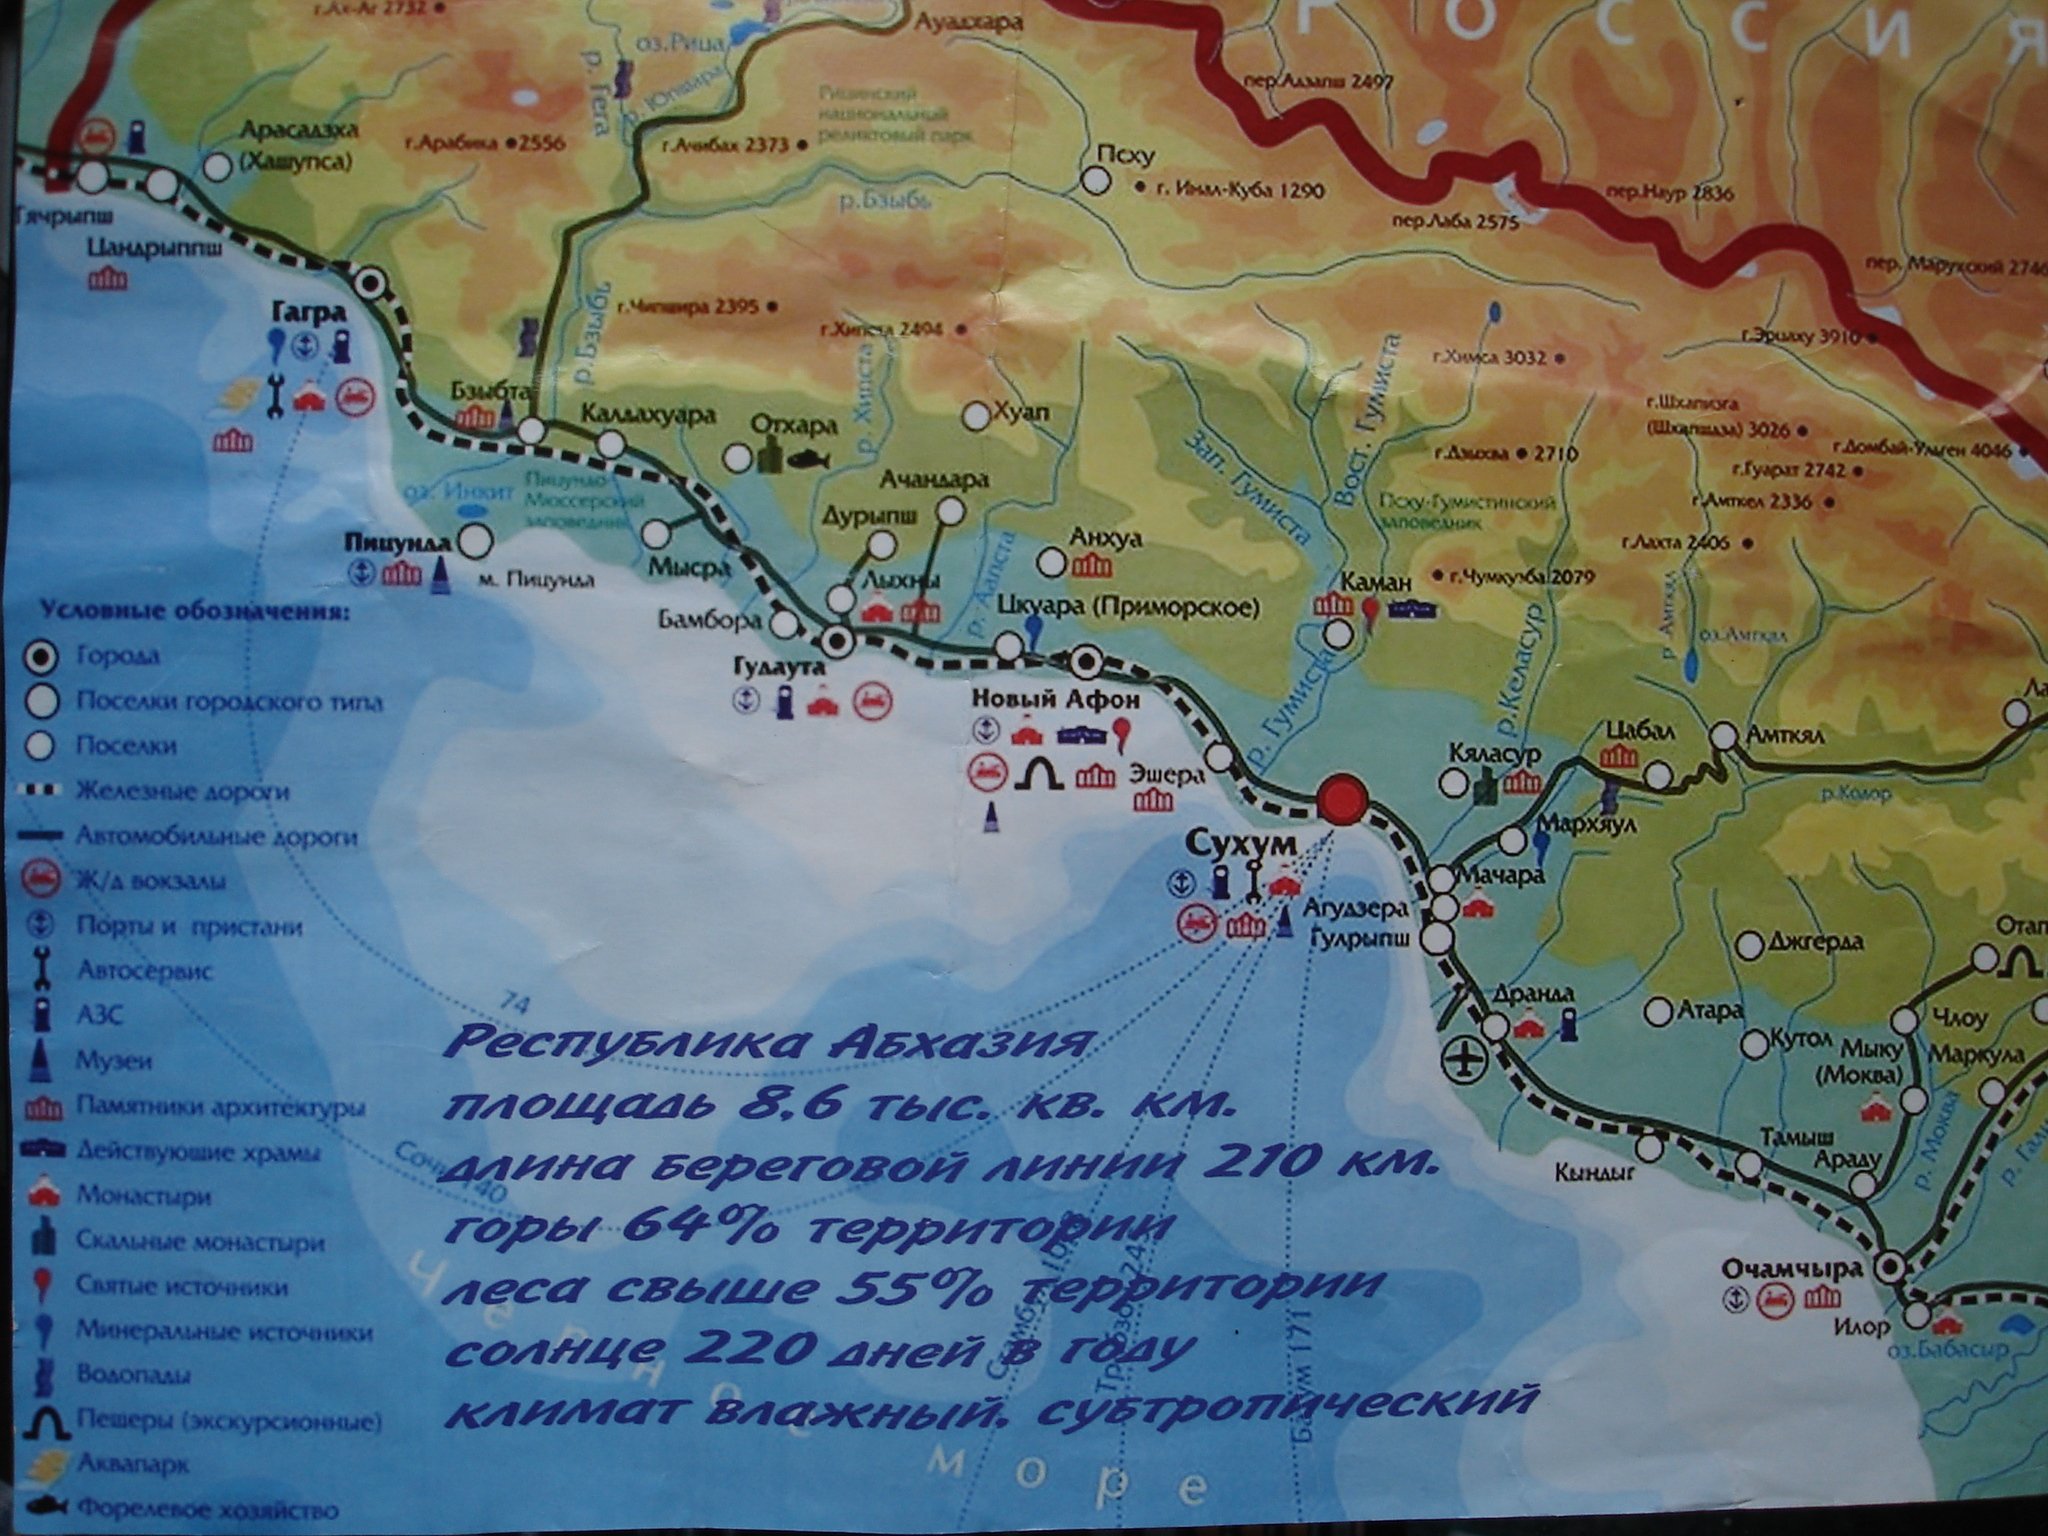 Где находится абхазия в какой стране. Карта Абхазии побережье черного. Карта Абхазии с поселками. Карта побережья чёрного моря с городами и поселками Абхазия. Карта Абхазии побережье с поселками.